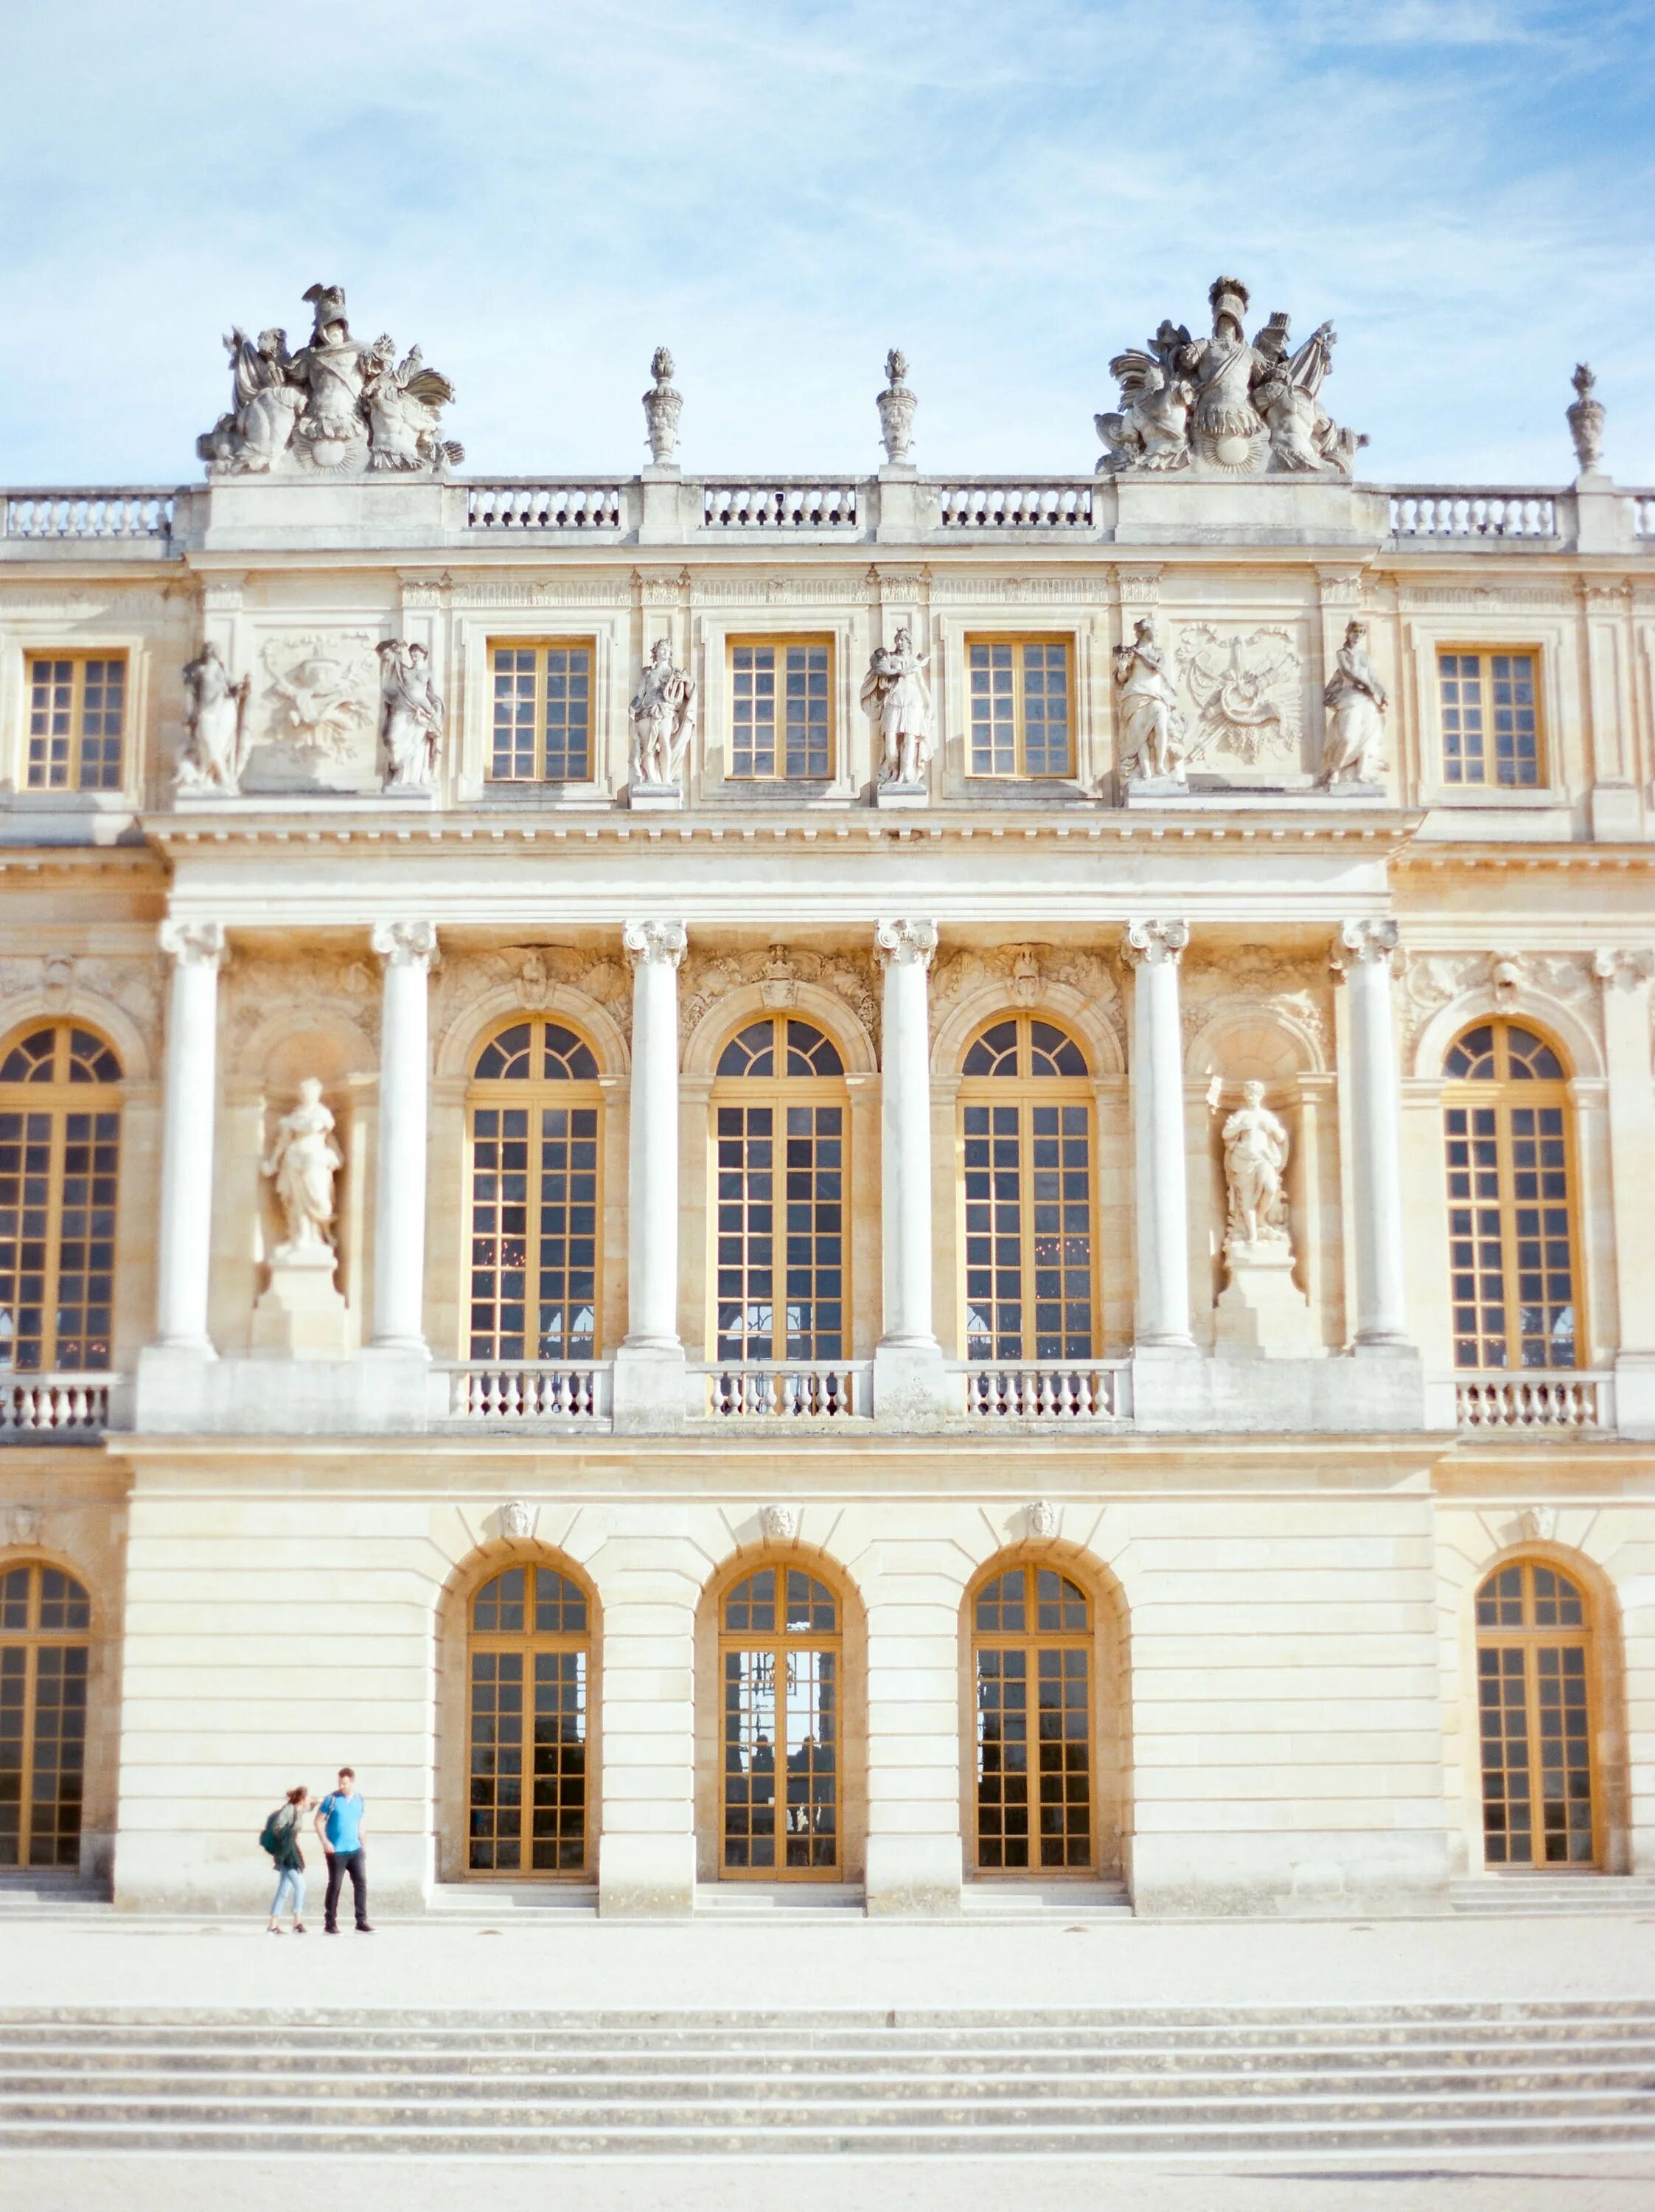 Версальский дворец Версаль Барокко. Версаль фасад дворца. Версальский дворец Версаль Барокко снаружи. Классицизм во Франции Версаль. Классицизм во франции архитектура